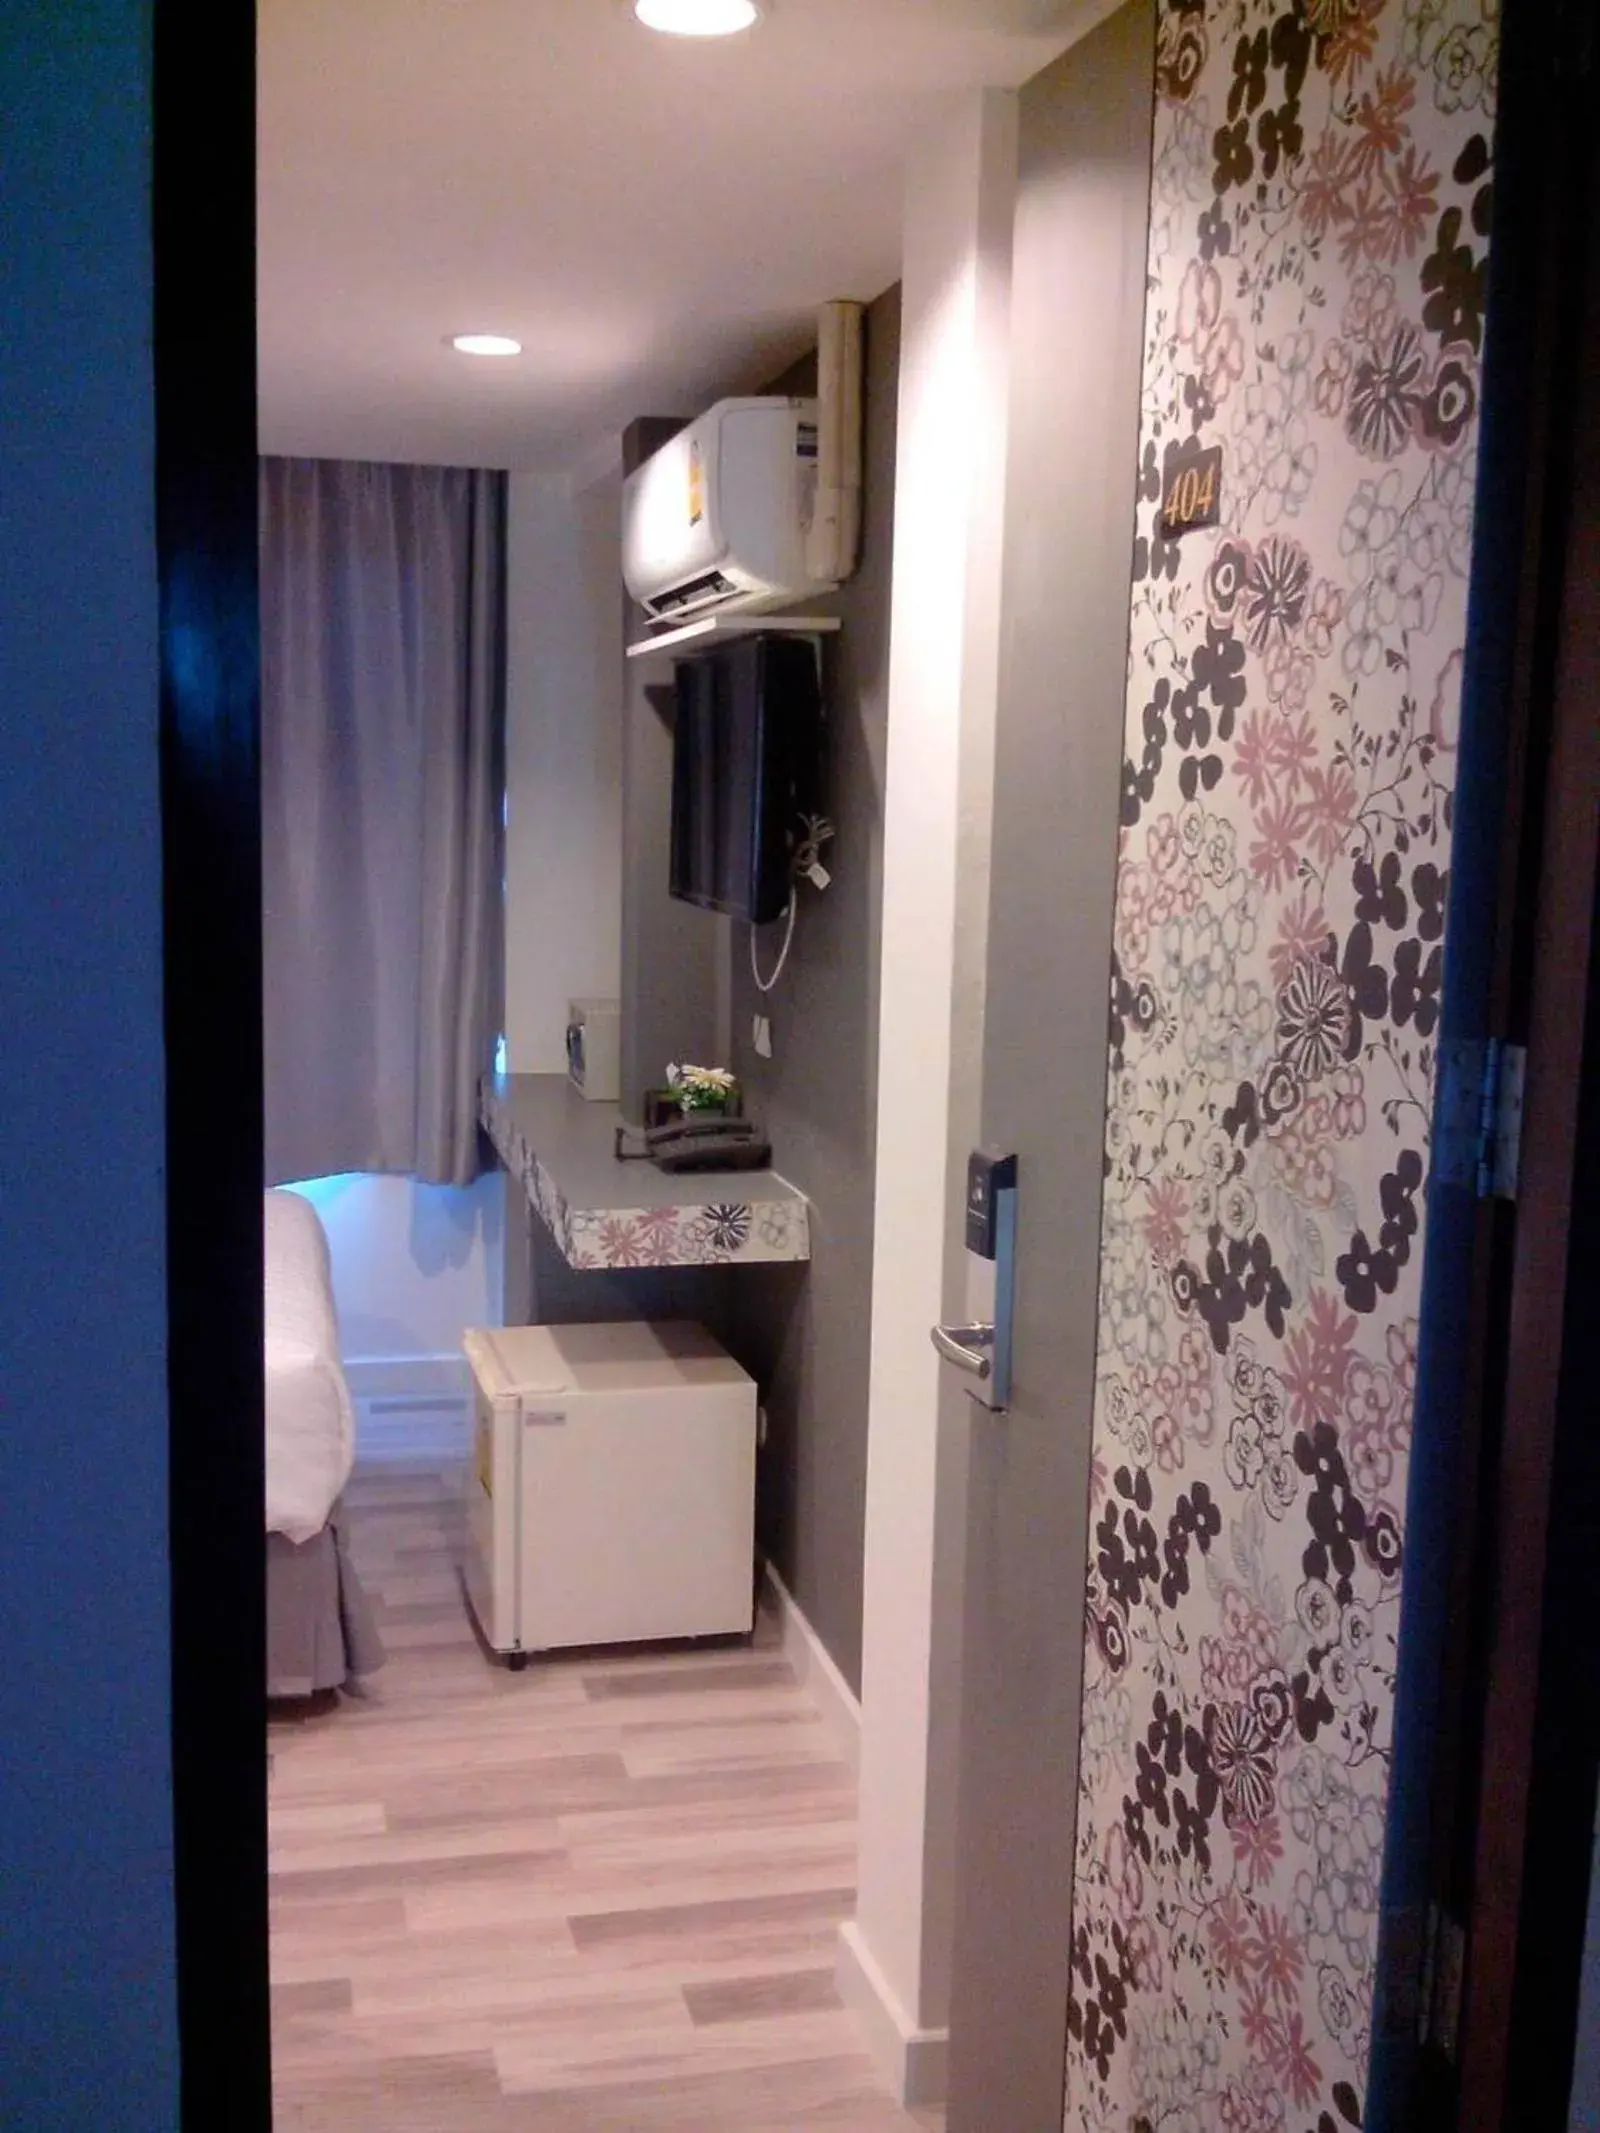 Decorative detail, Bathroom in Nantra Ploenchit Hotel